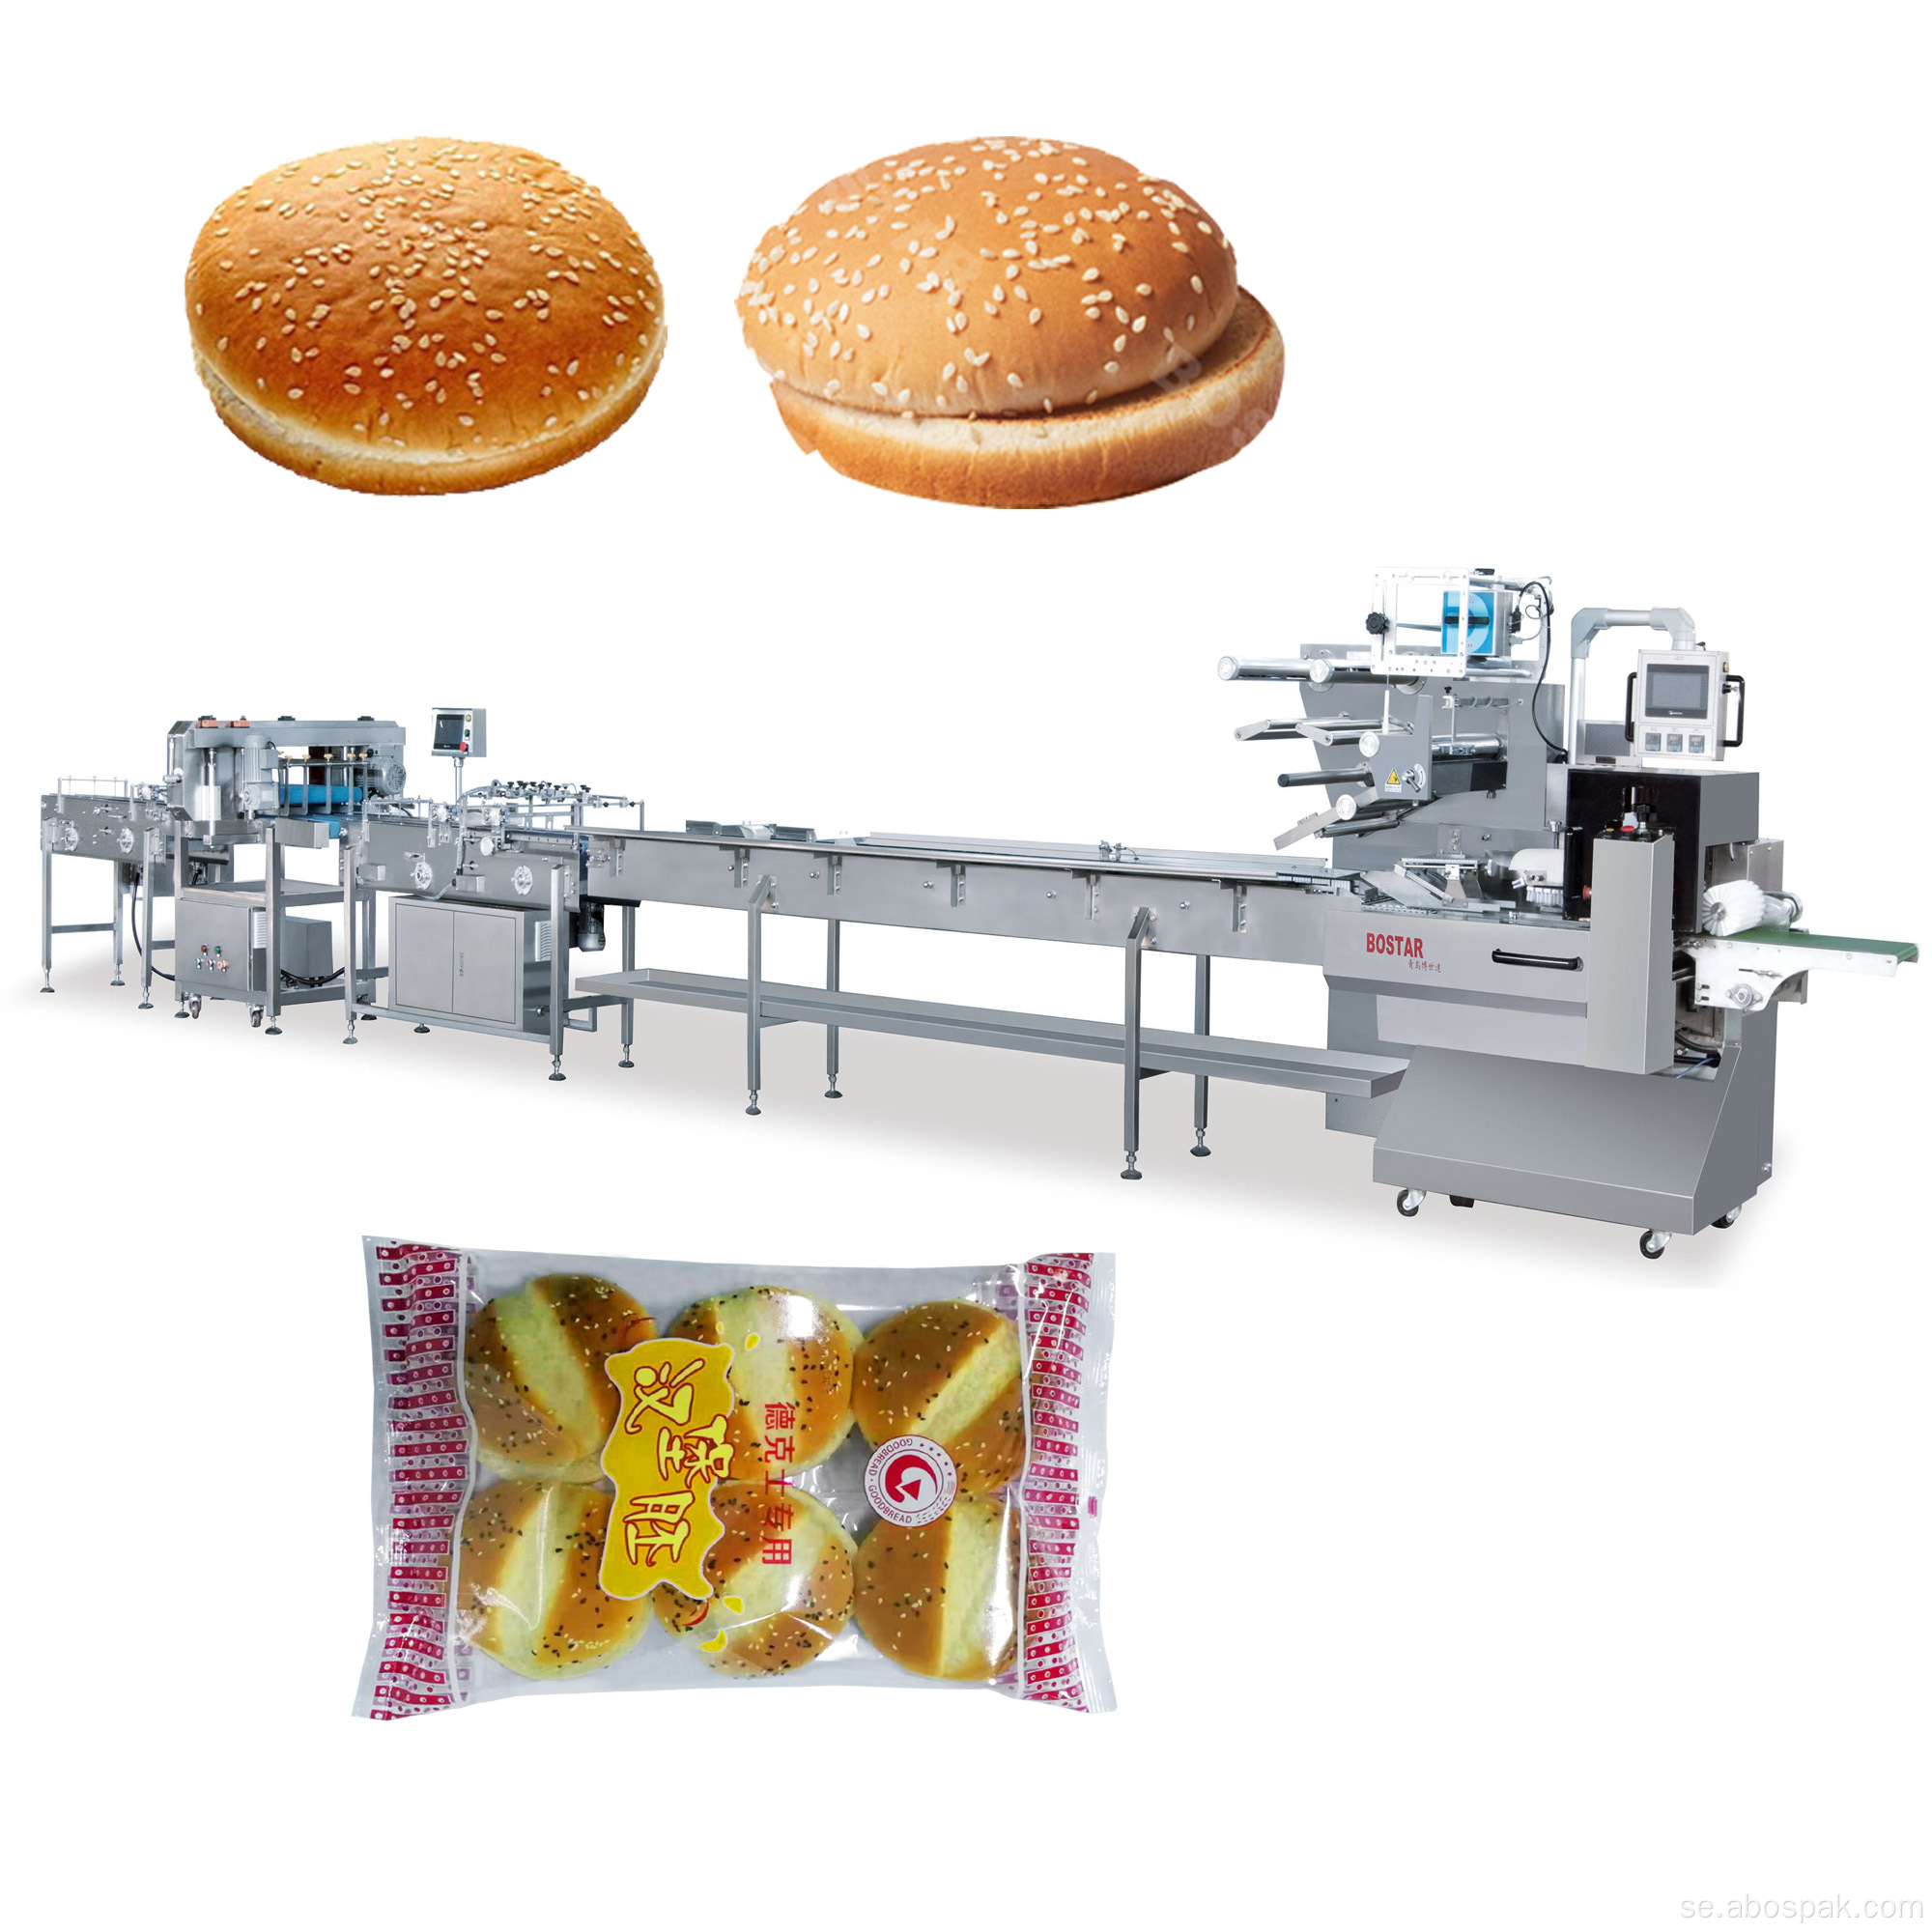 Automatisk förpackningsmaskin för hamburgerbullar